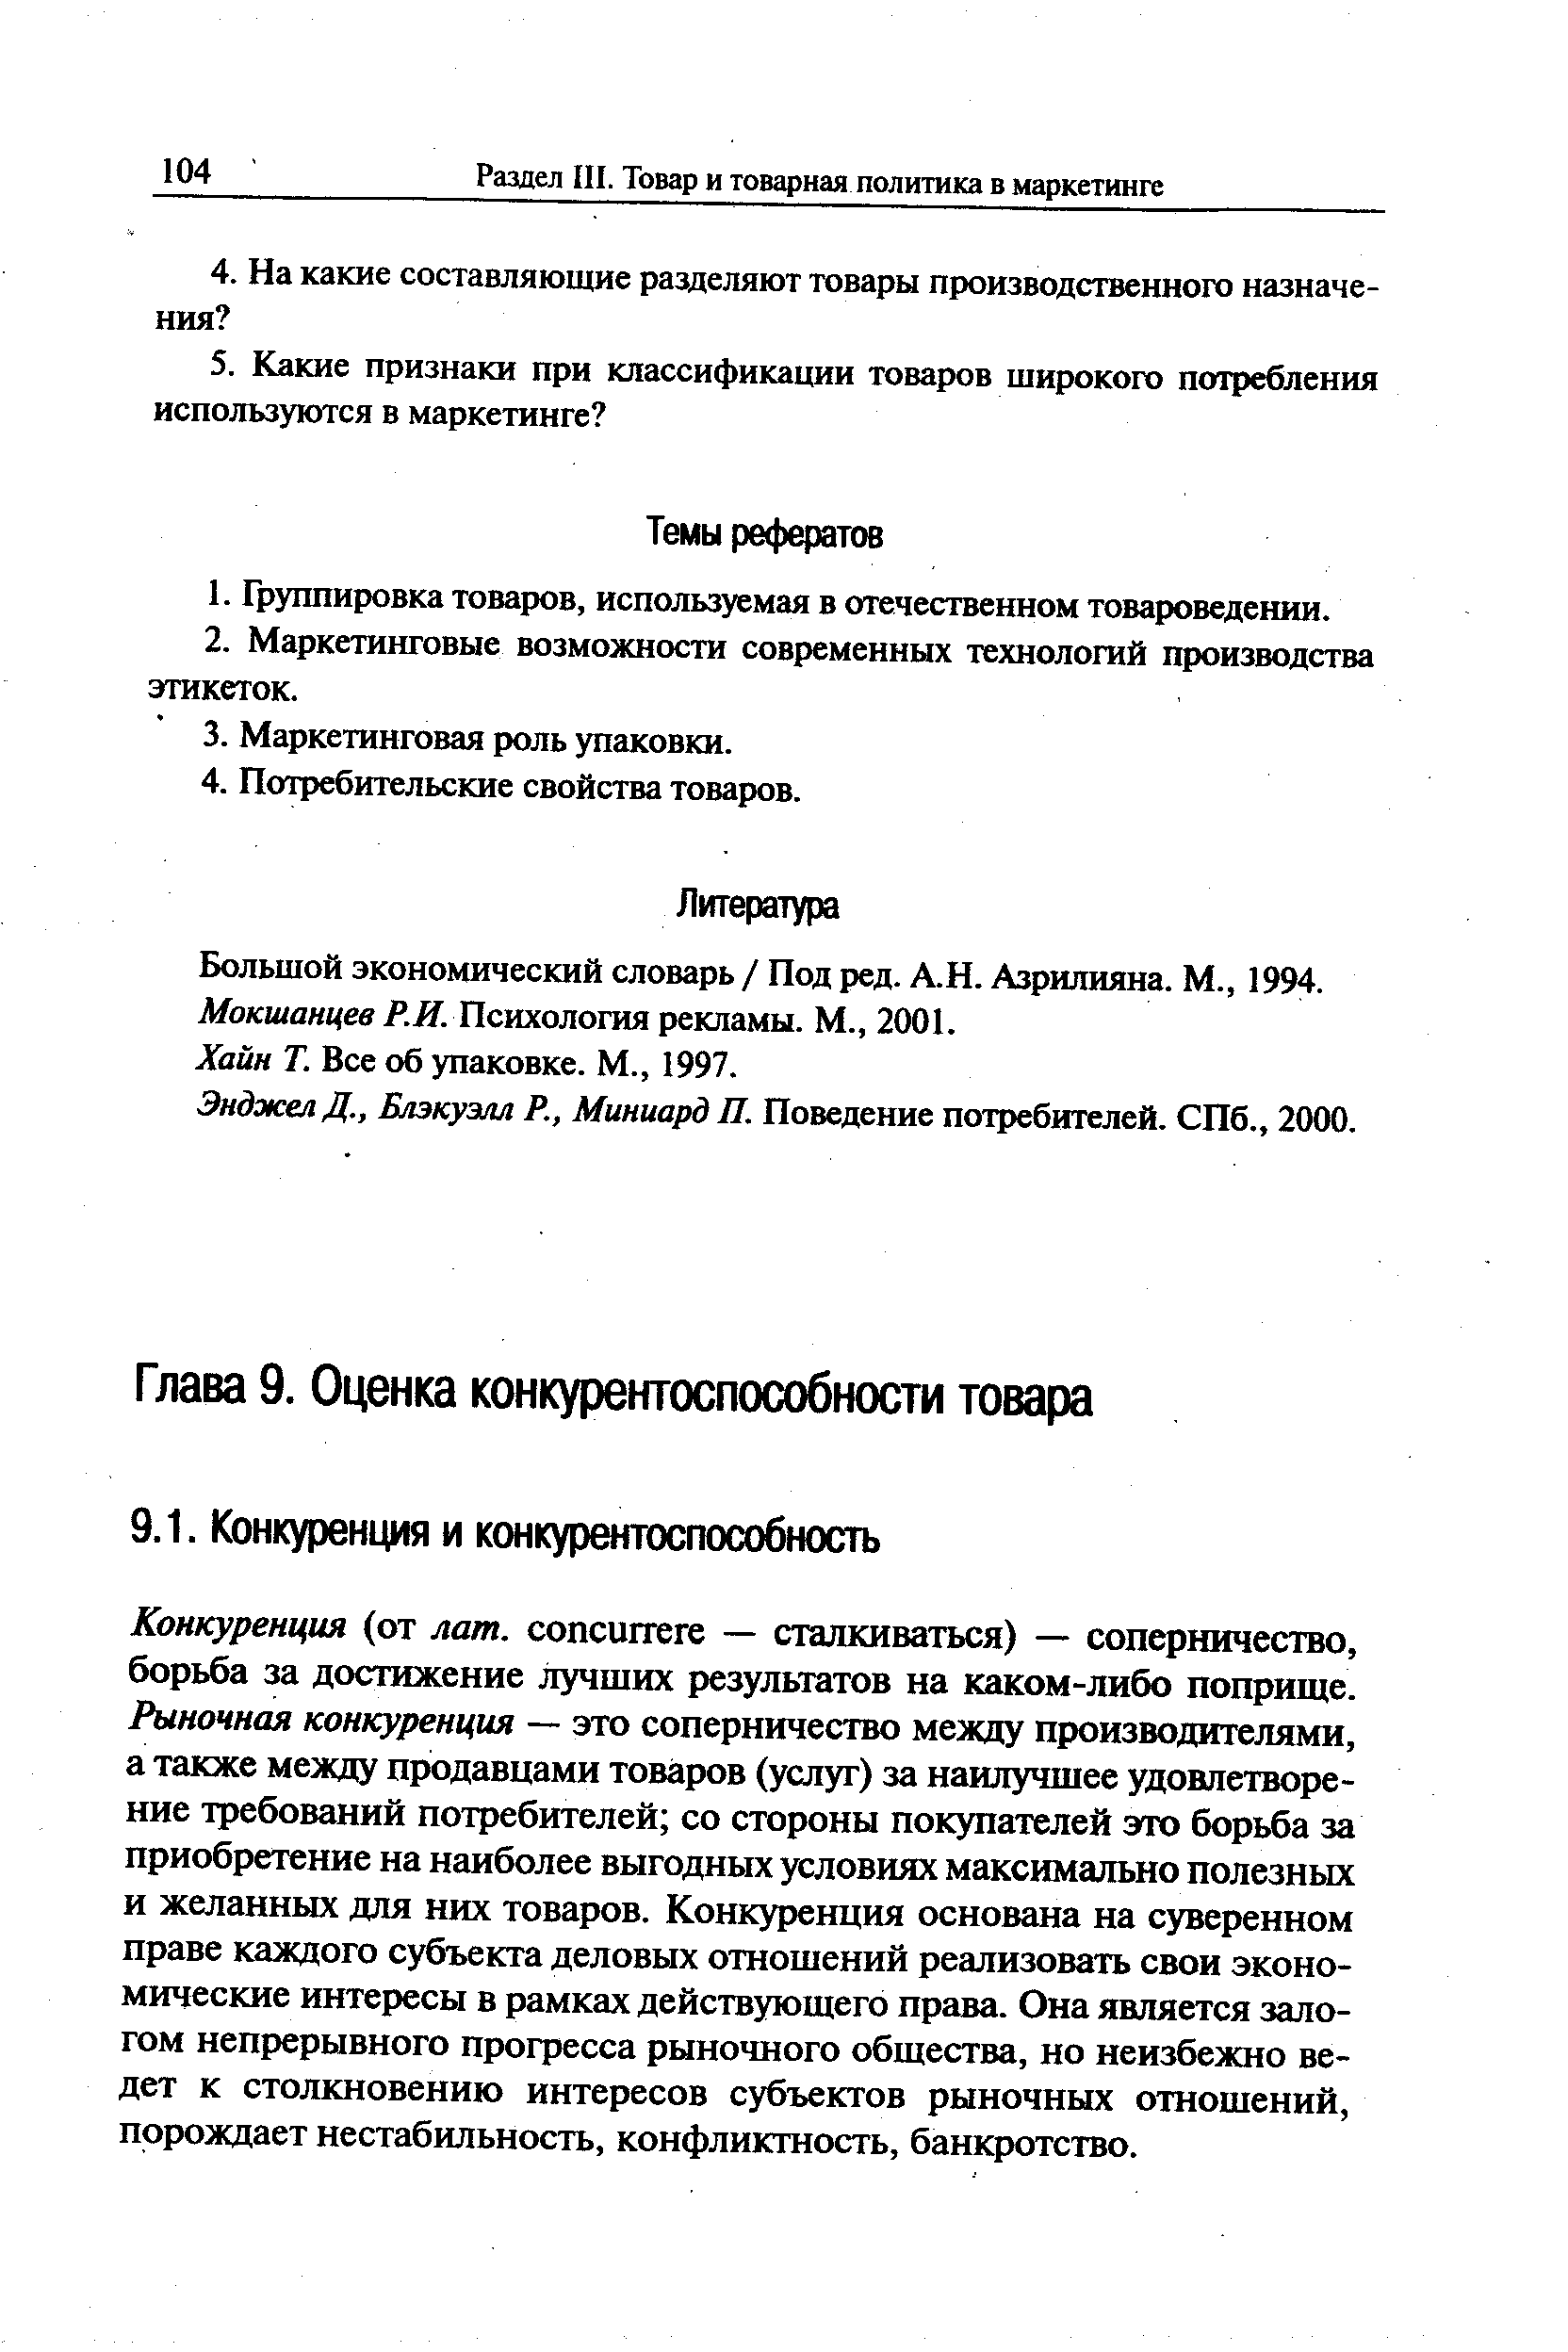 Все об упаковке. М., 1997.
